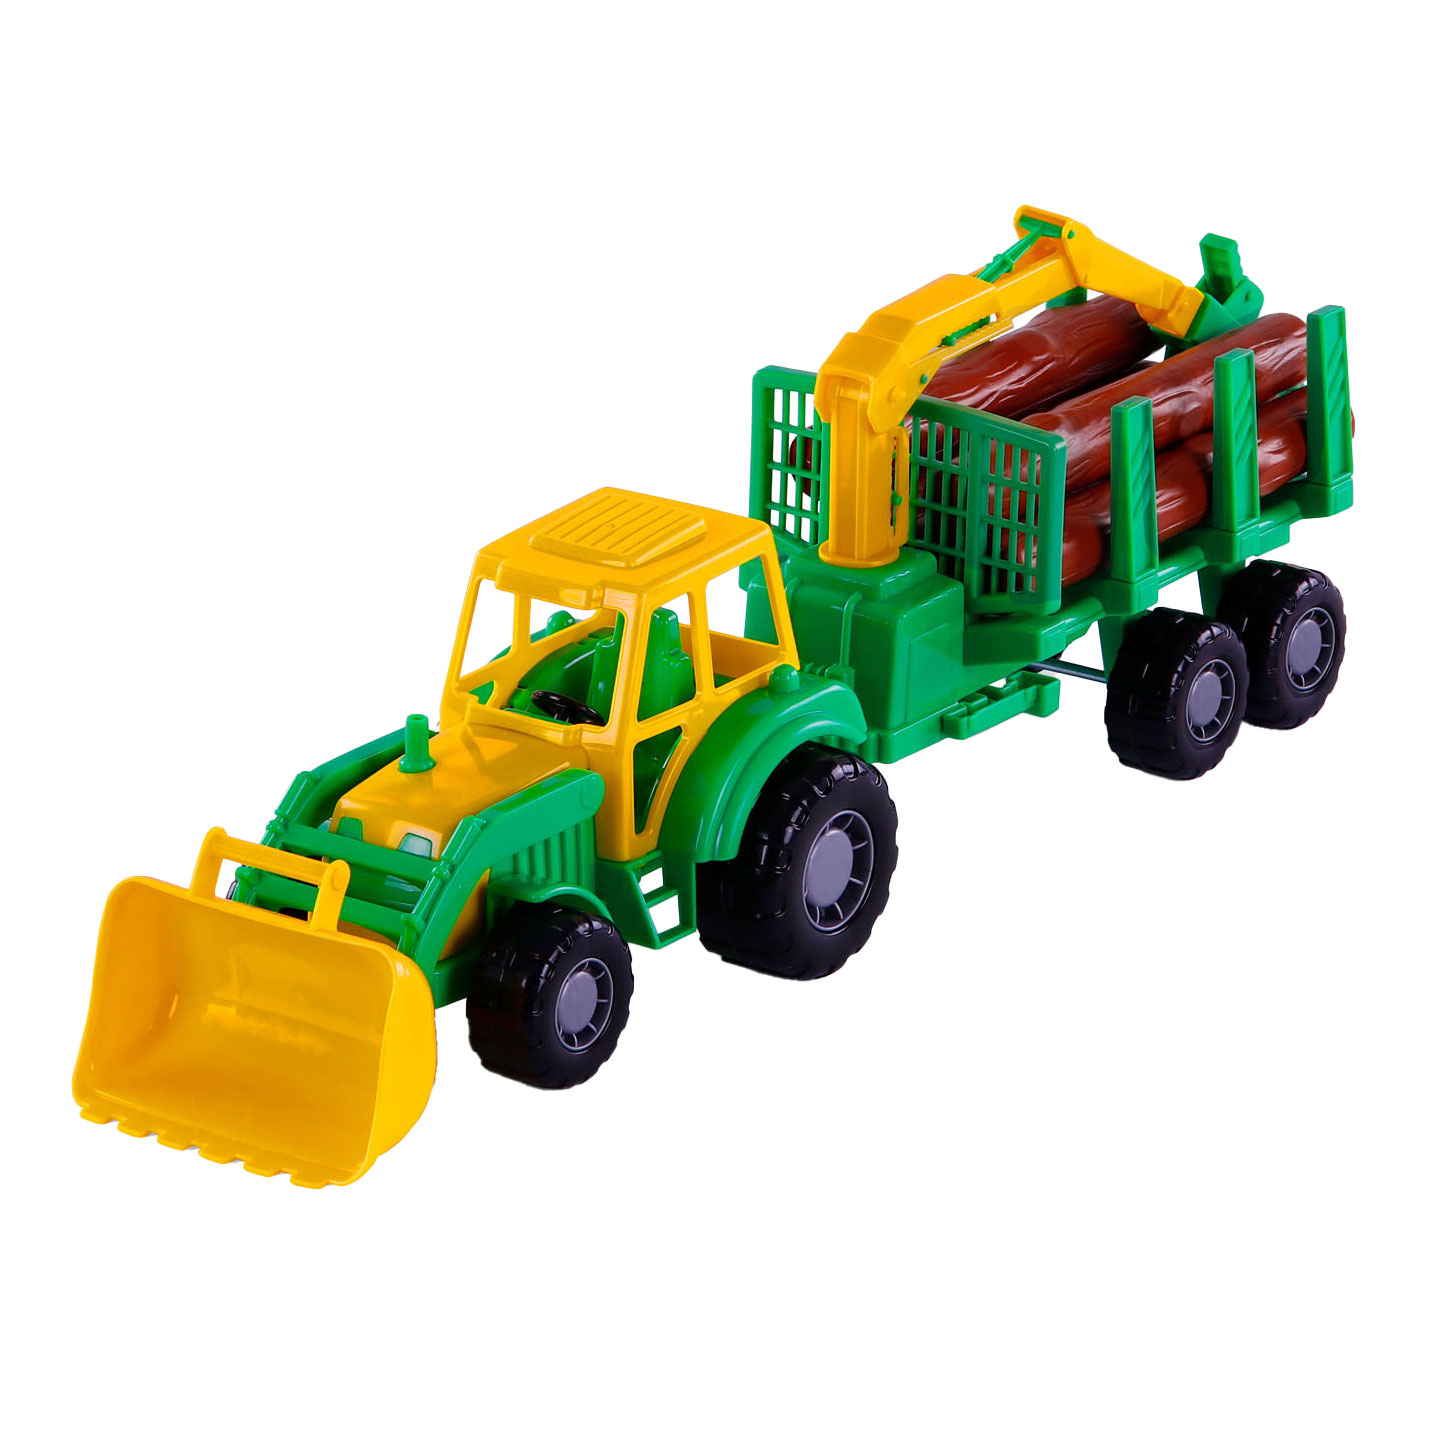 Tracteur Cavallino Junior avec remorque grue et bois, 46 cm